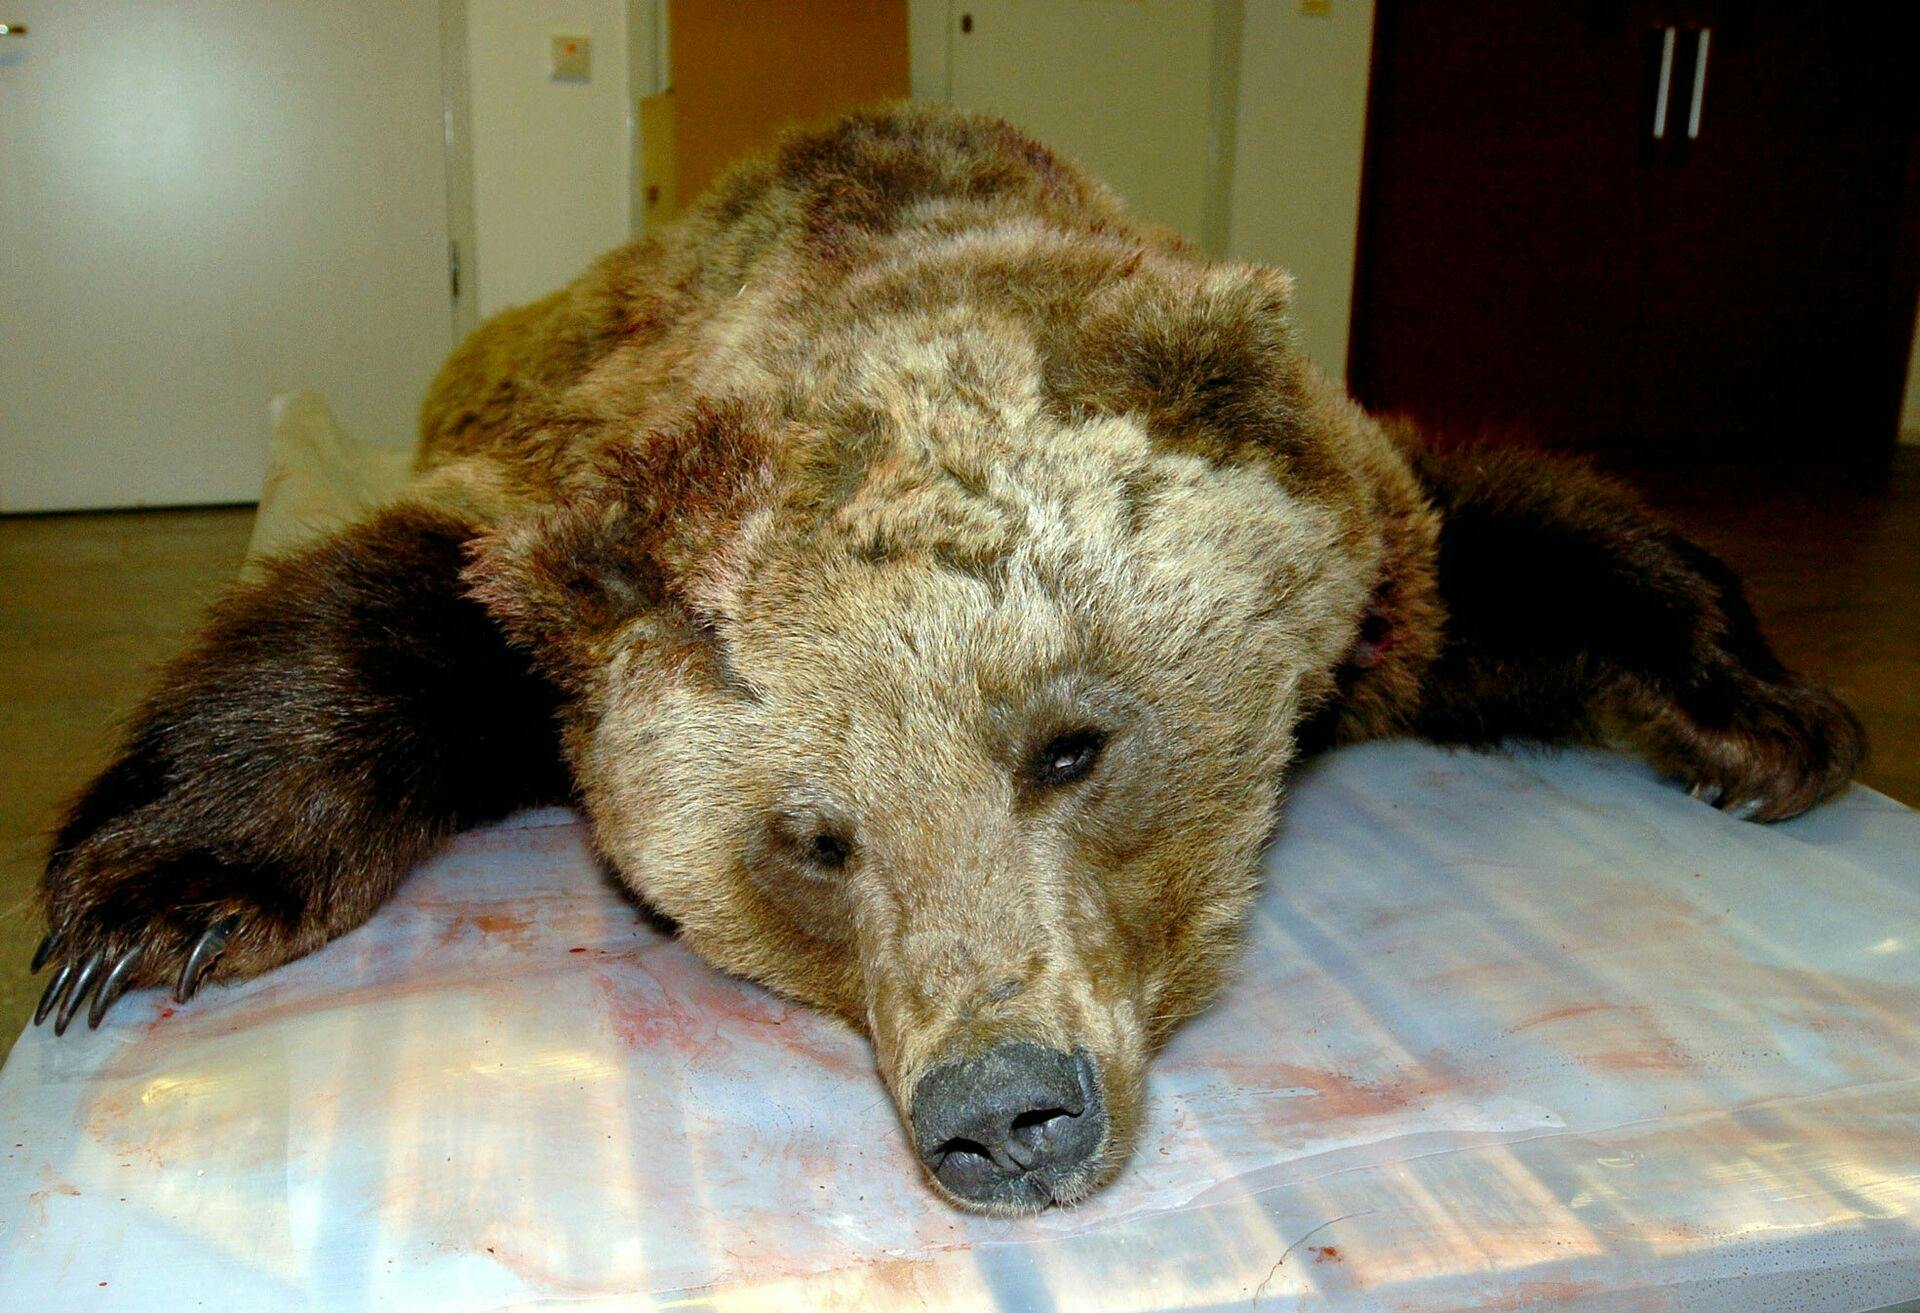 Det er heldigvis meget sjældent, at en bjørn dræber mennesker i Sverige. Men i 2004 skete det. Bjørnen blev dræbt og var den første i dengang 106 år, som havde dræbt et menneske i landet.